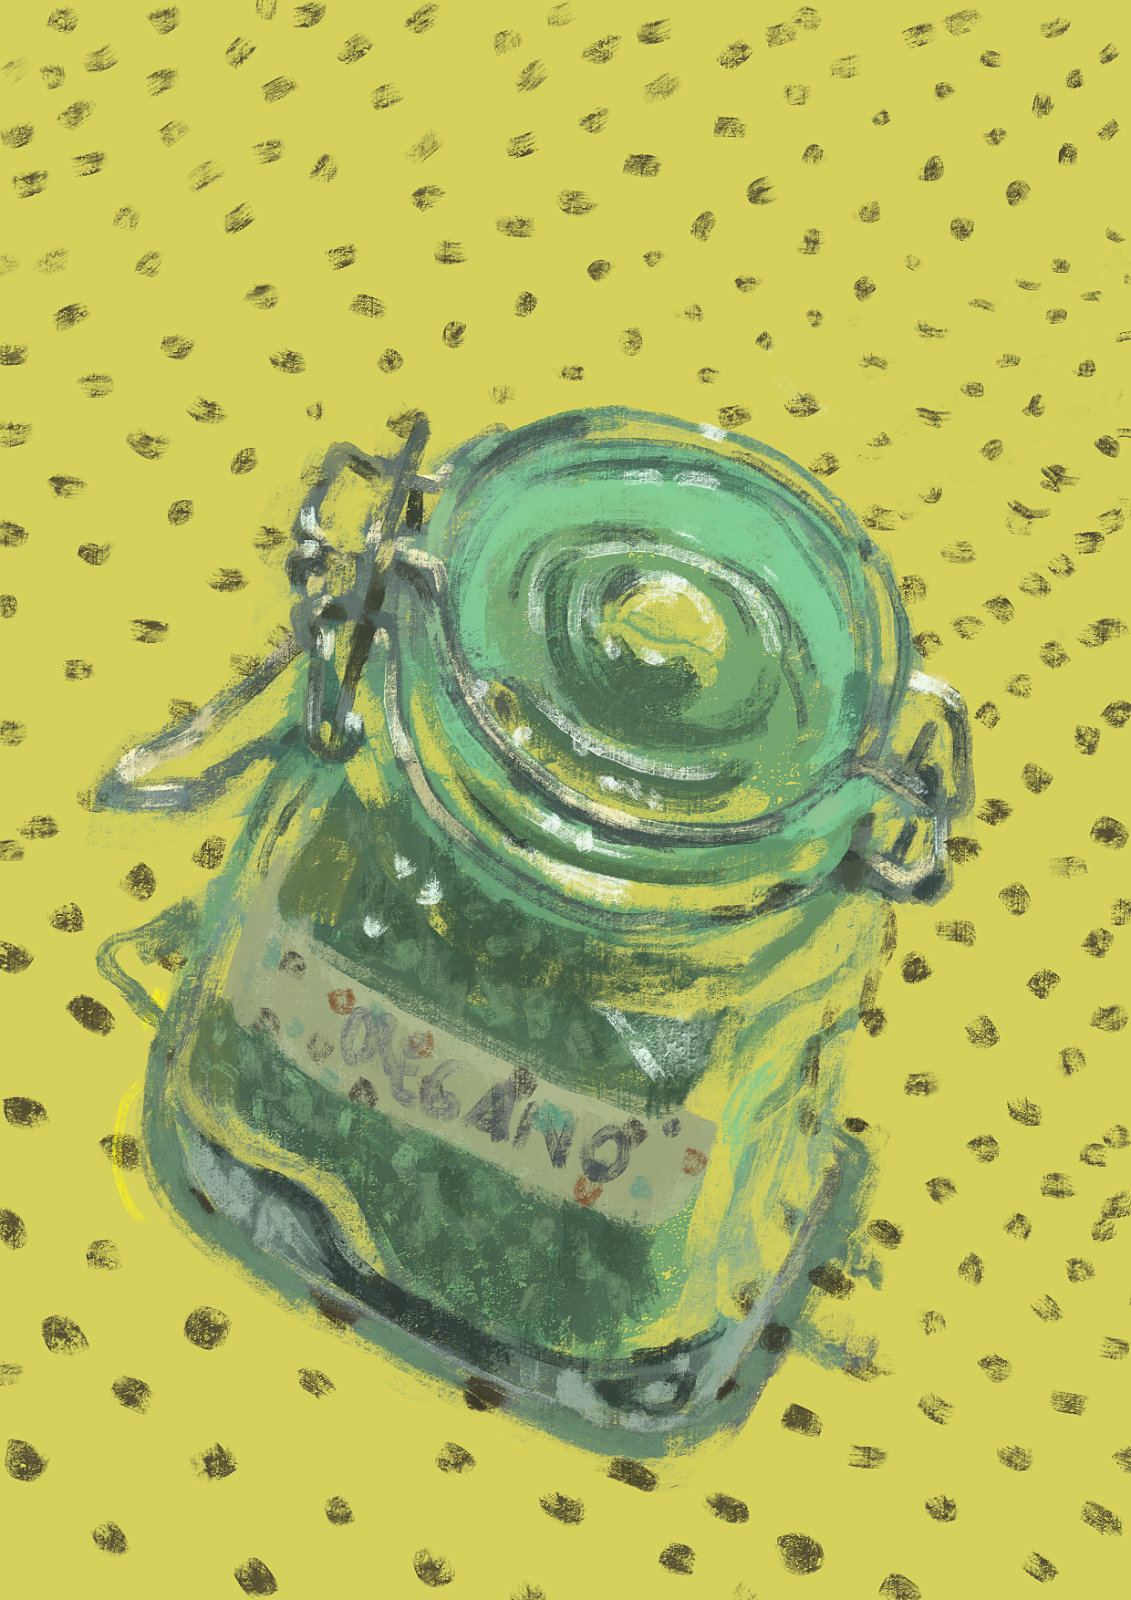 Pintura digital de um pote de vidro pequeno com orégano dentro e uma fita colada escrito "orégano" à mão.